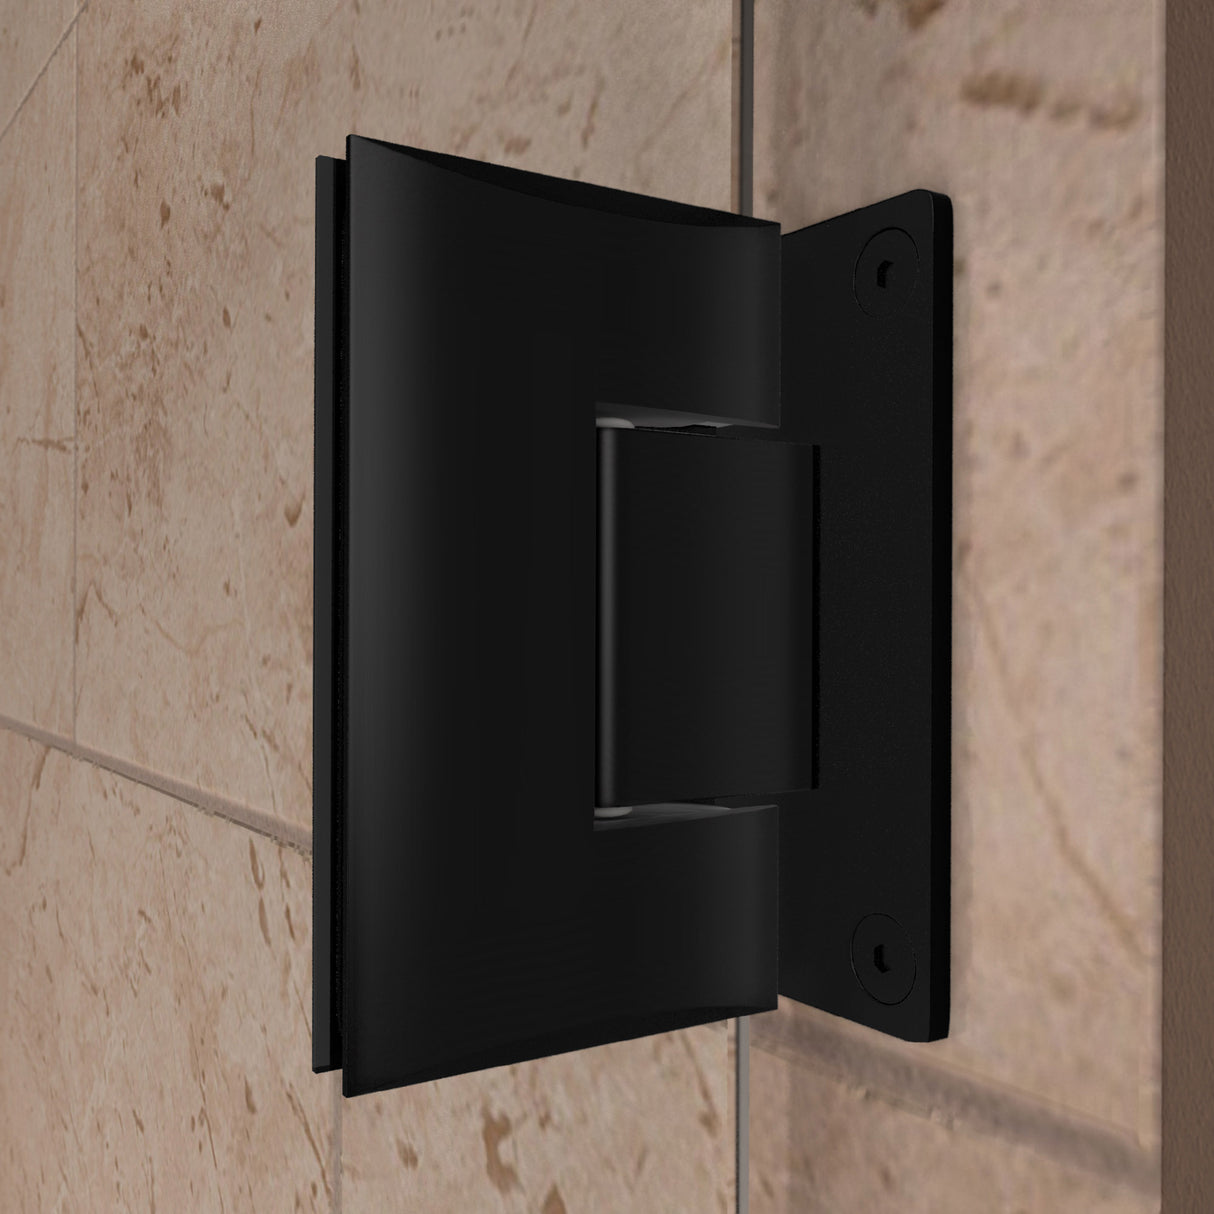 DreamLine Unidoor 44-45 in. W x 72 in. H Frameless Hinged Shower Door with Shelves in Satin Black